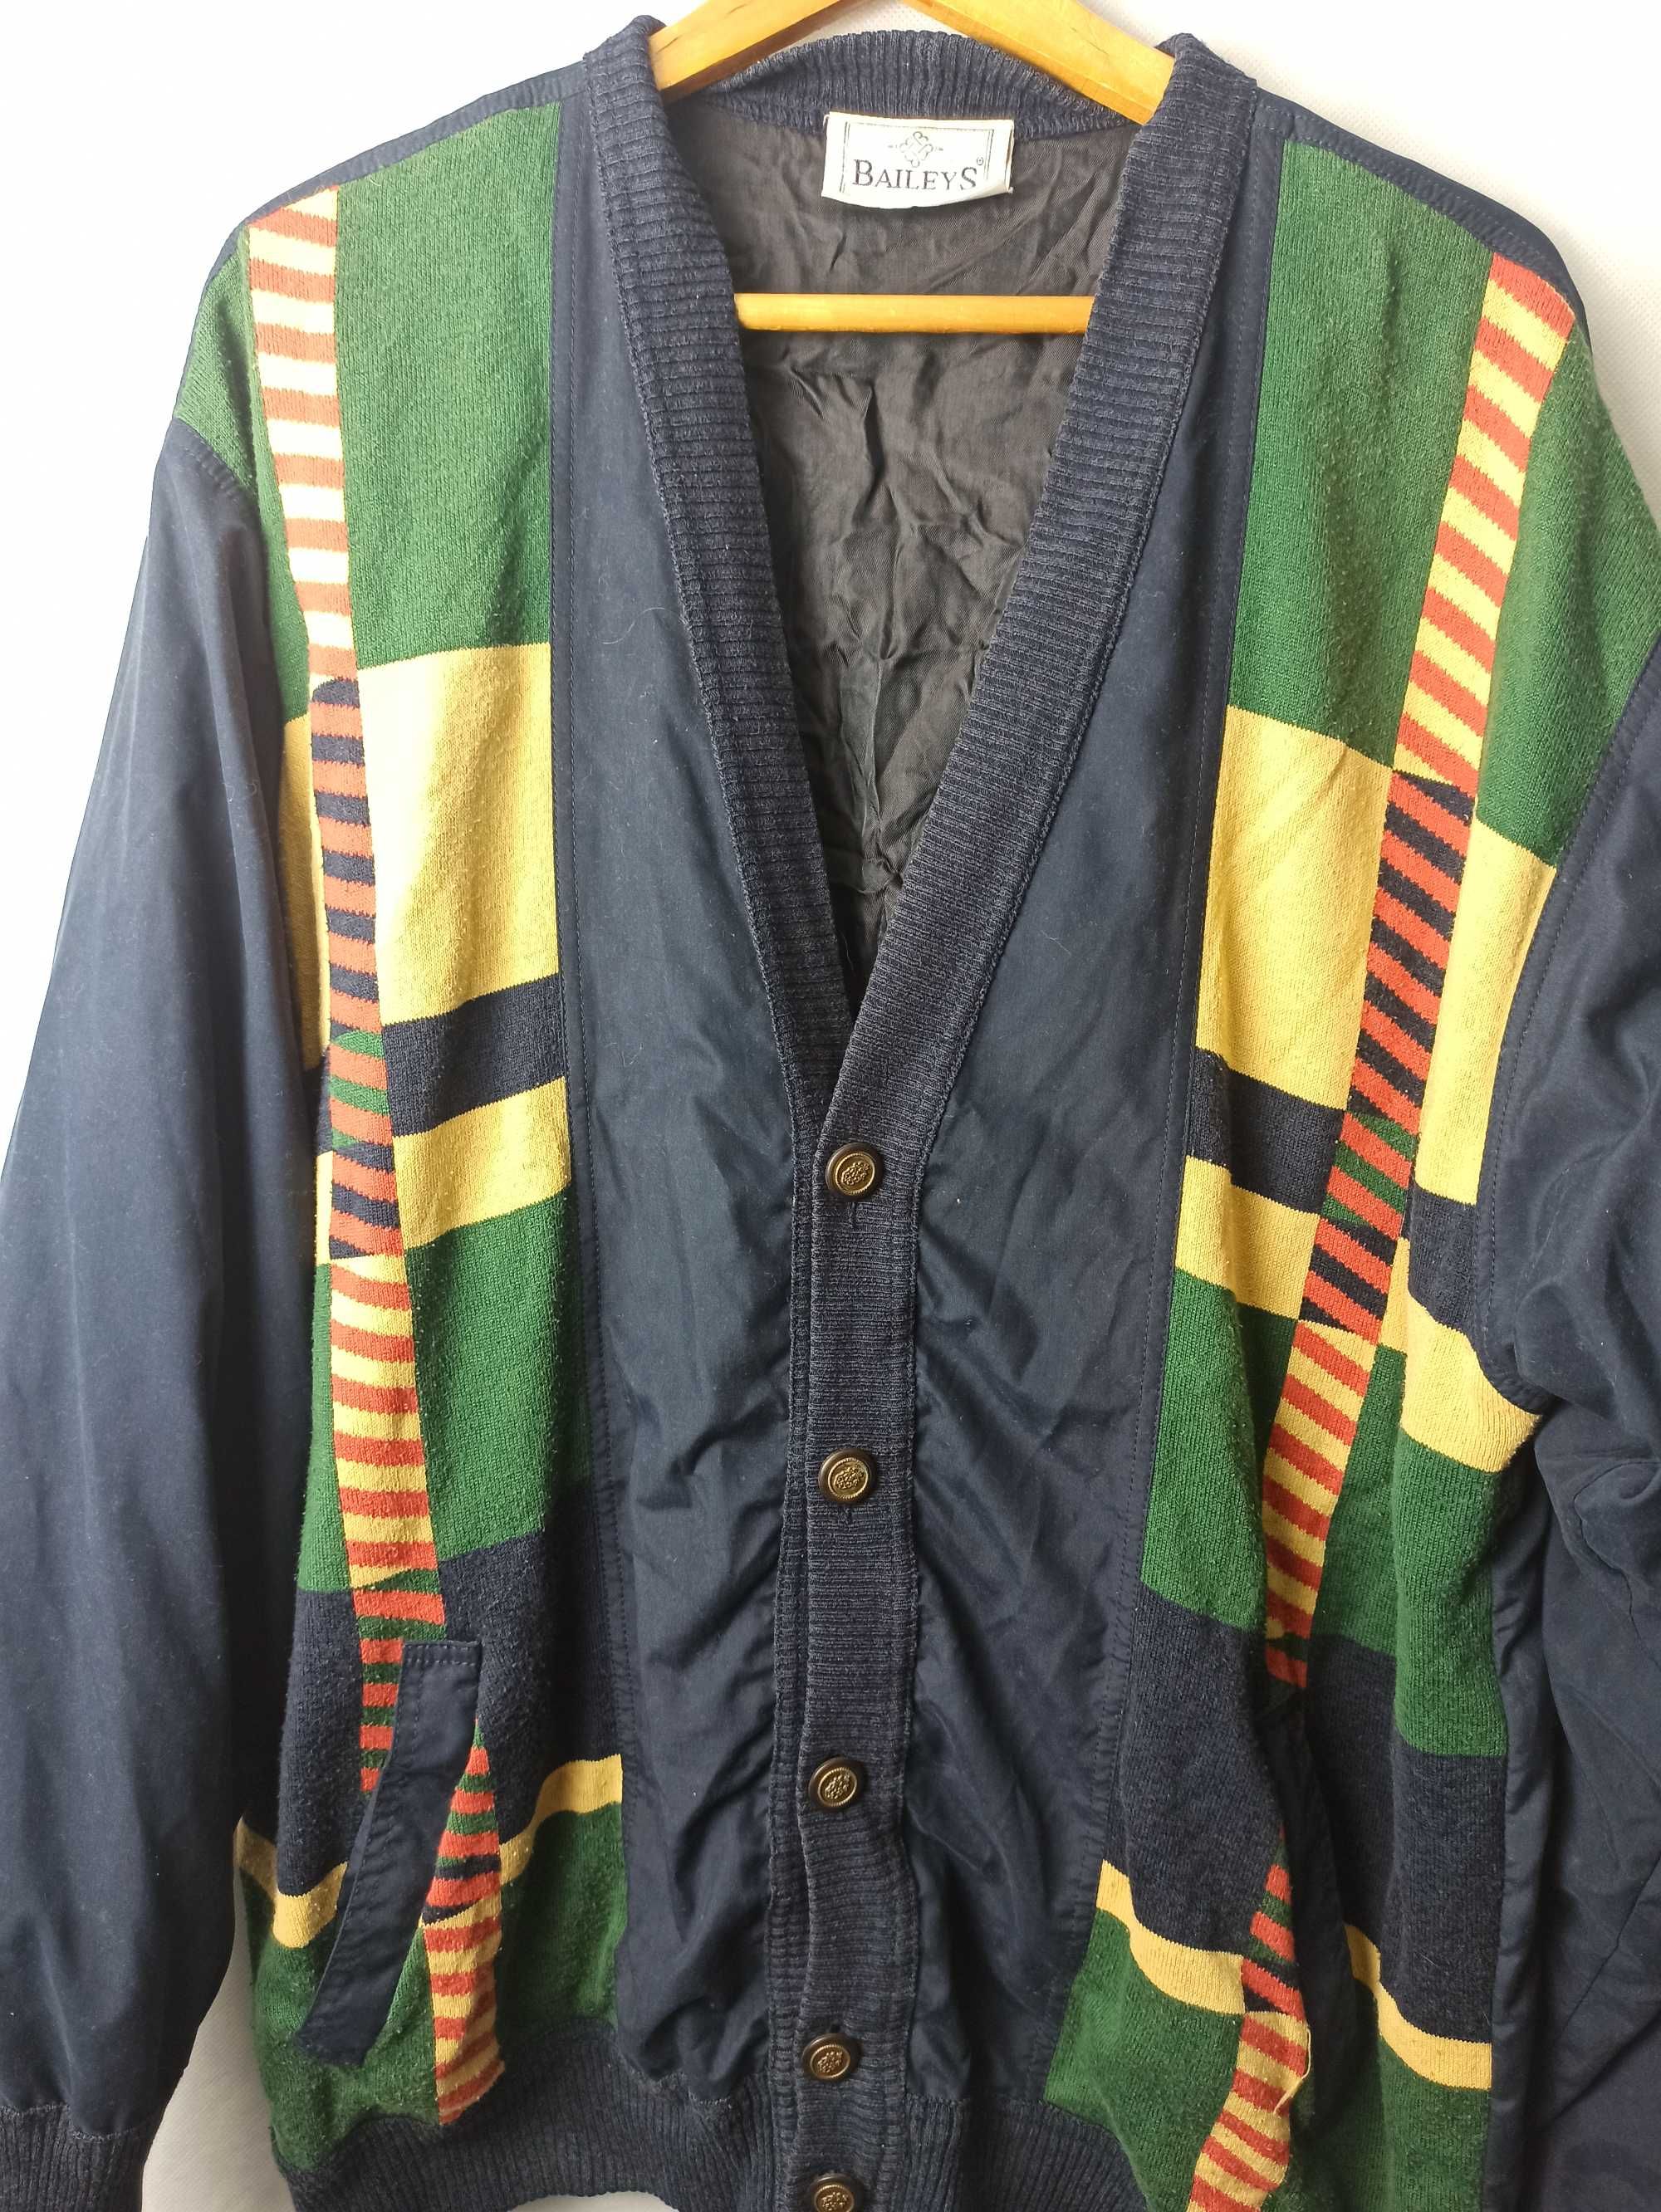 90s Vintage Multicolor Cardigan
Jacket